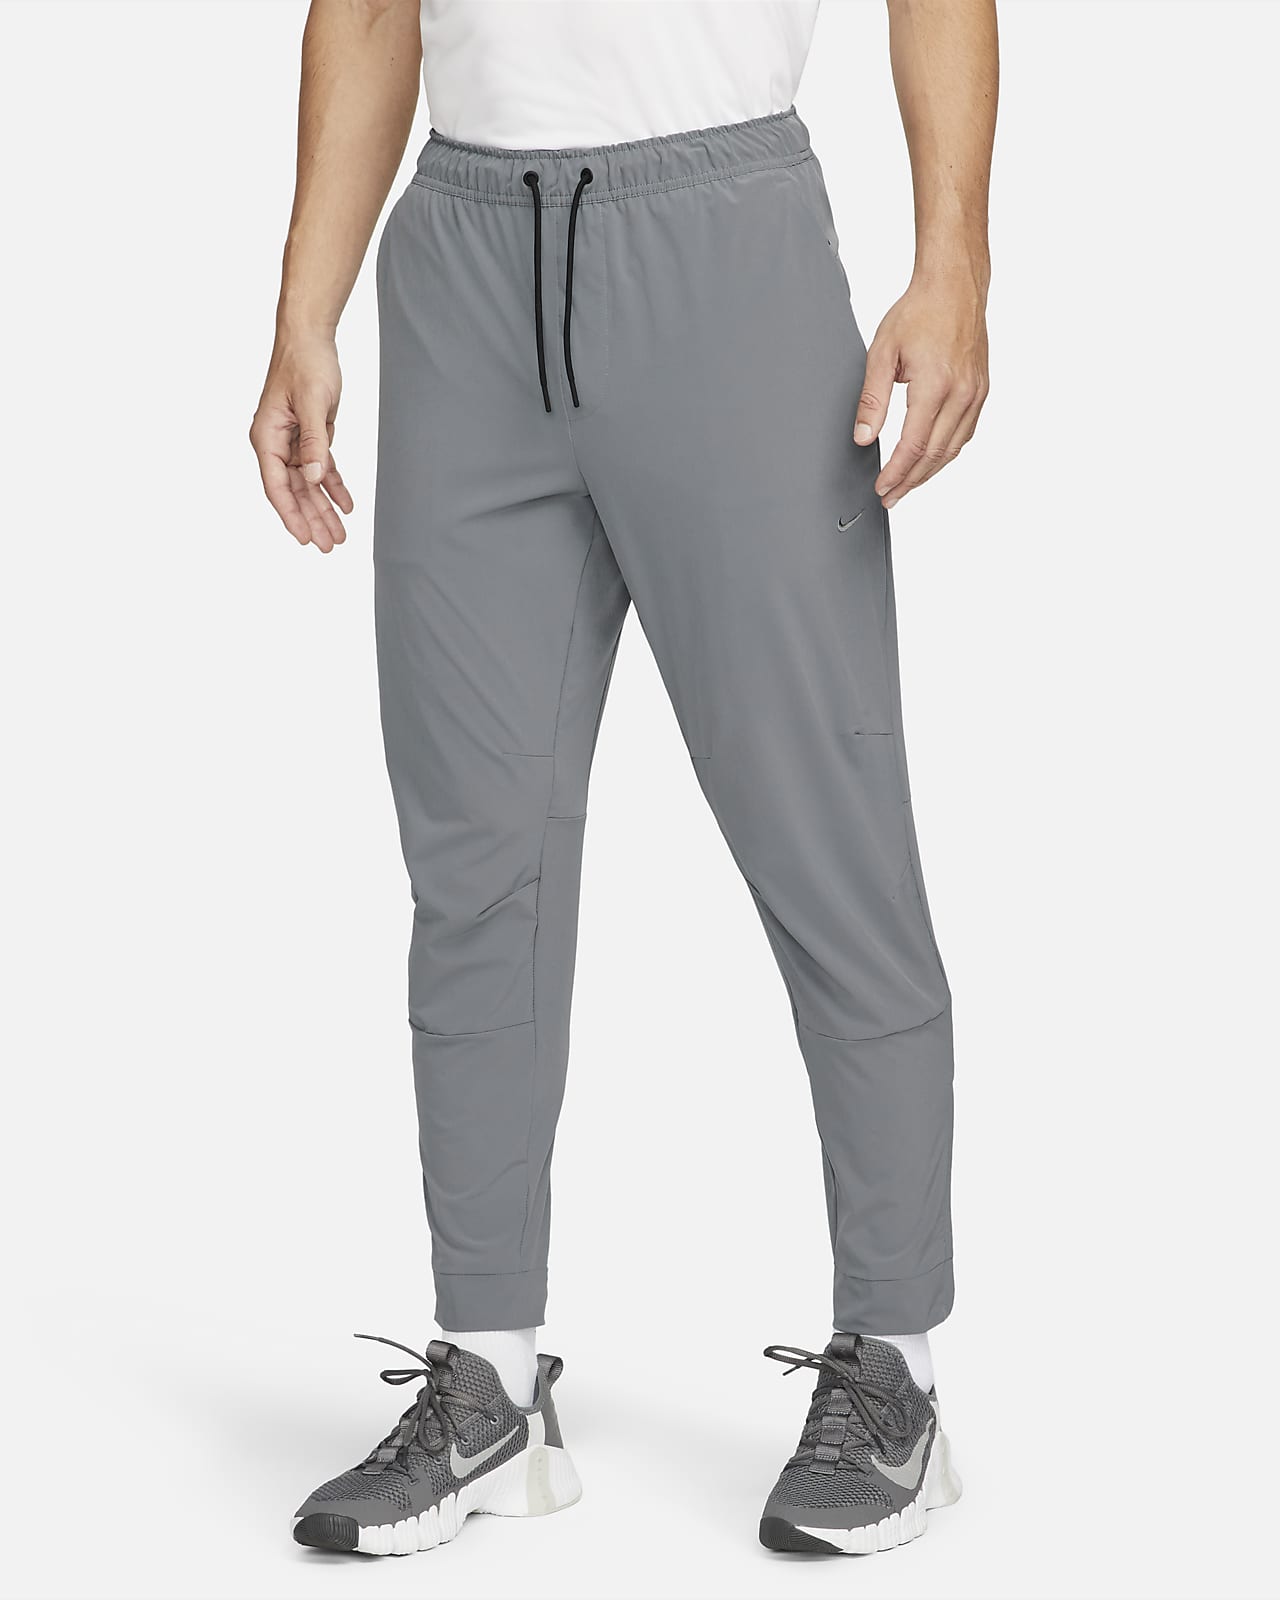 Nike Unlimited Pantalón versátil con bajos con cremallera Dri-FIT ADV - Hombre